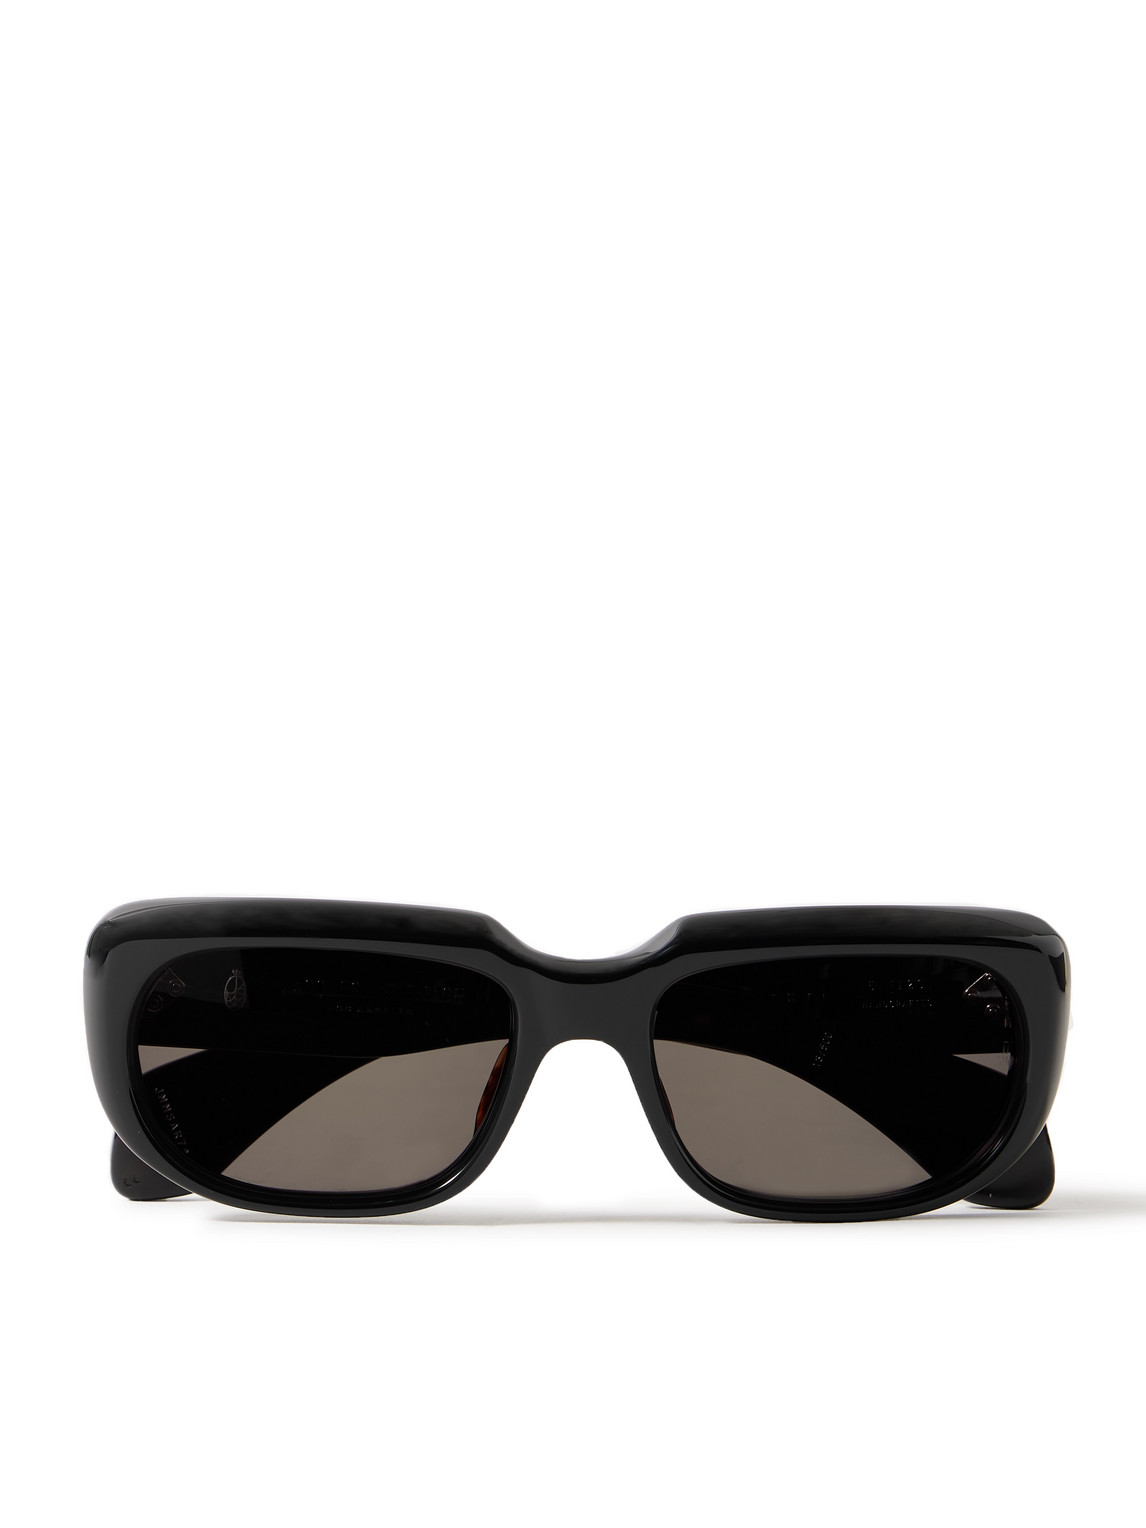 Jacques Marie Mage - Sartet Rectangular-Frame Acete Sunglasses - Men - Black von Jacques Marie Mage